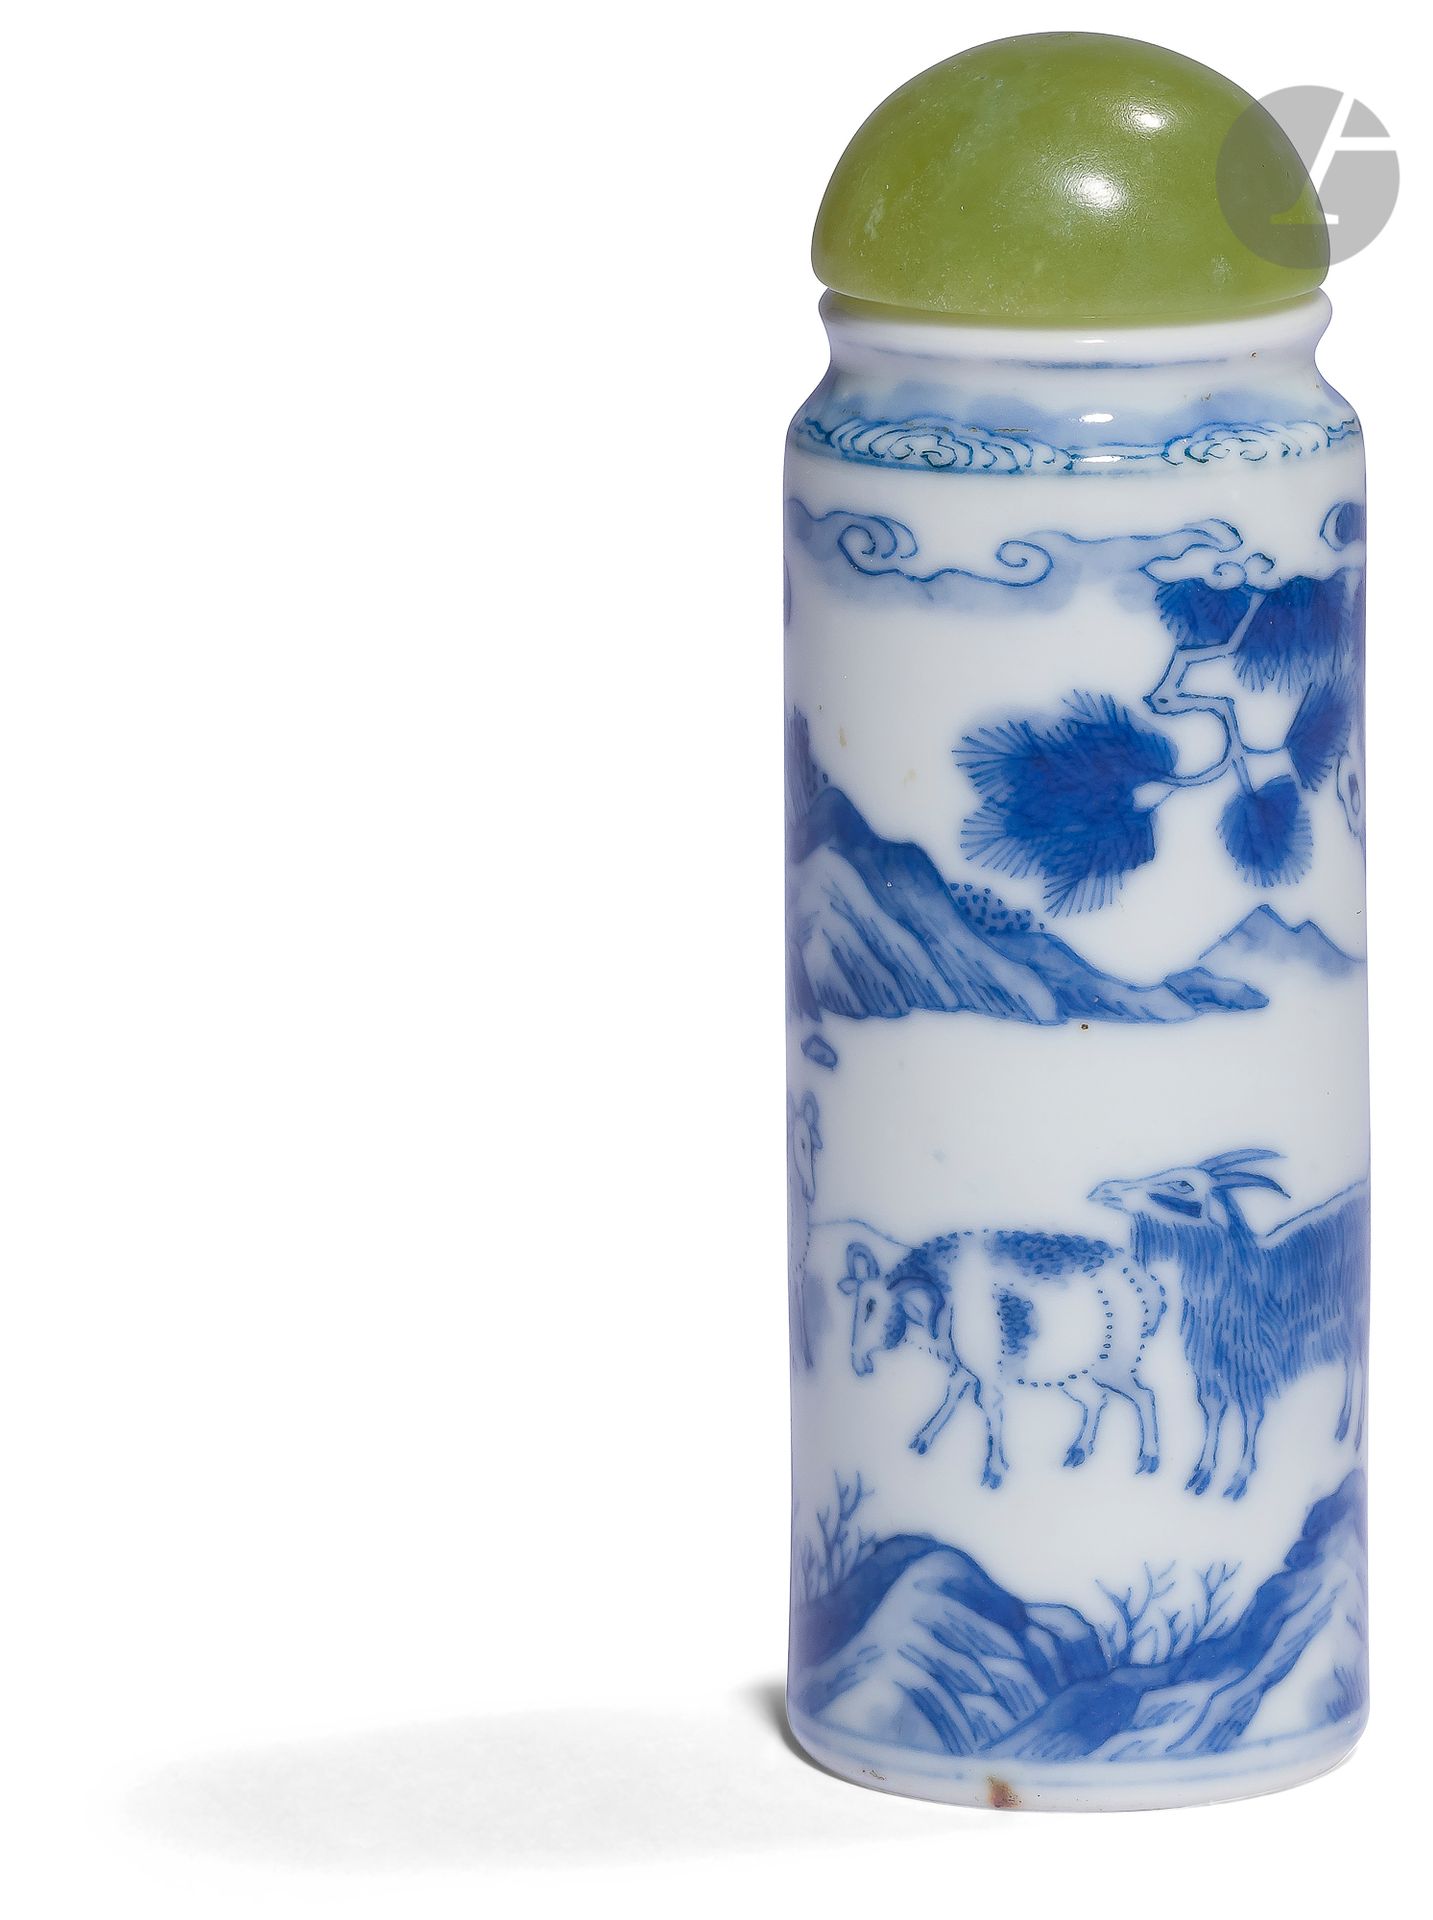 Null Tabaquera de porcelana azul y blanca, China,
siglo
XIXFrasco de
forma cilín&hellip;